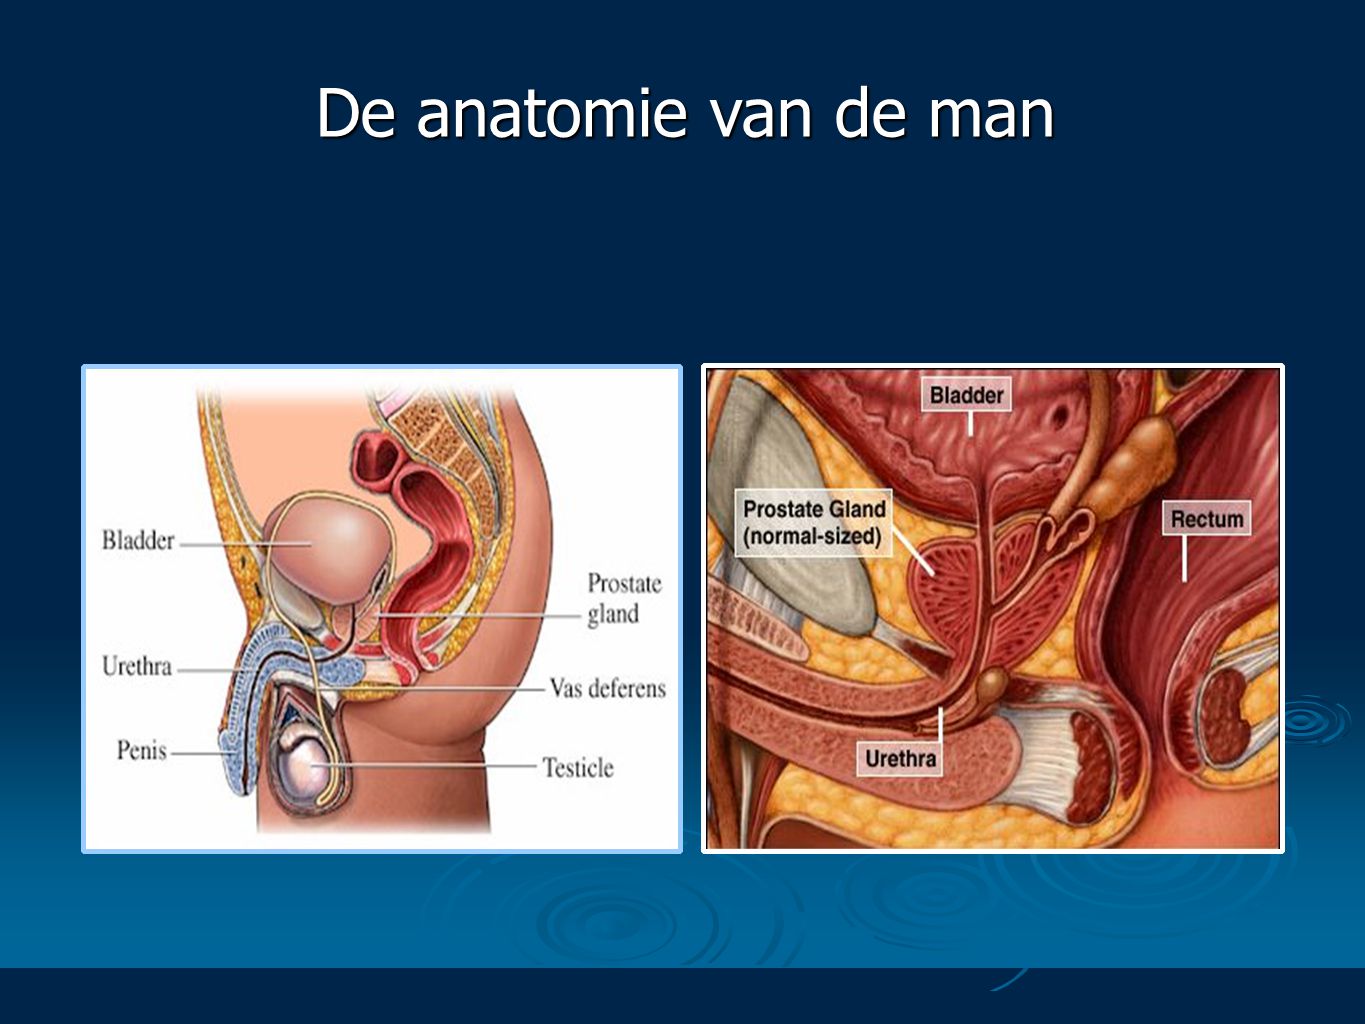 De anatomie van de man